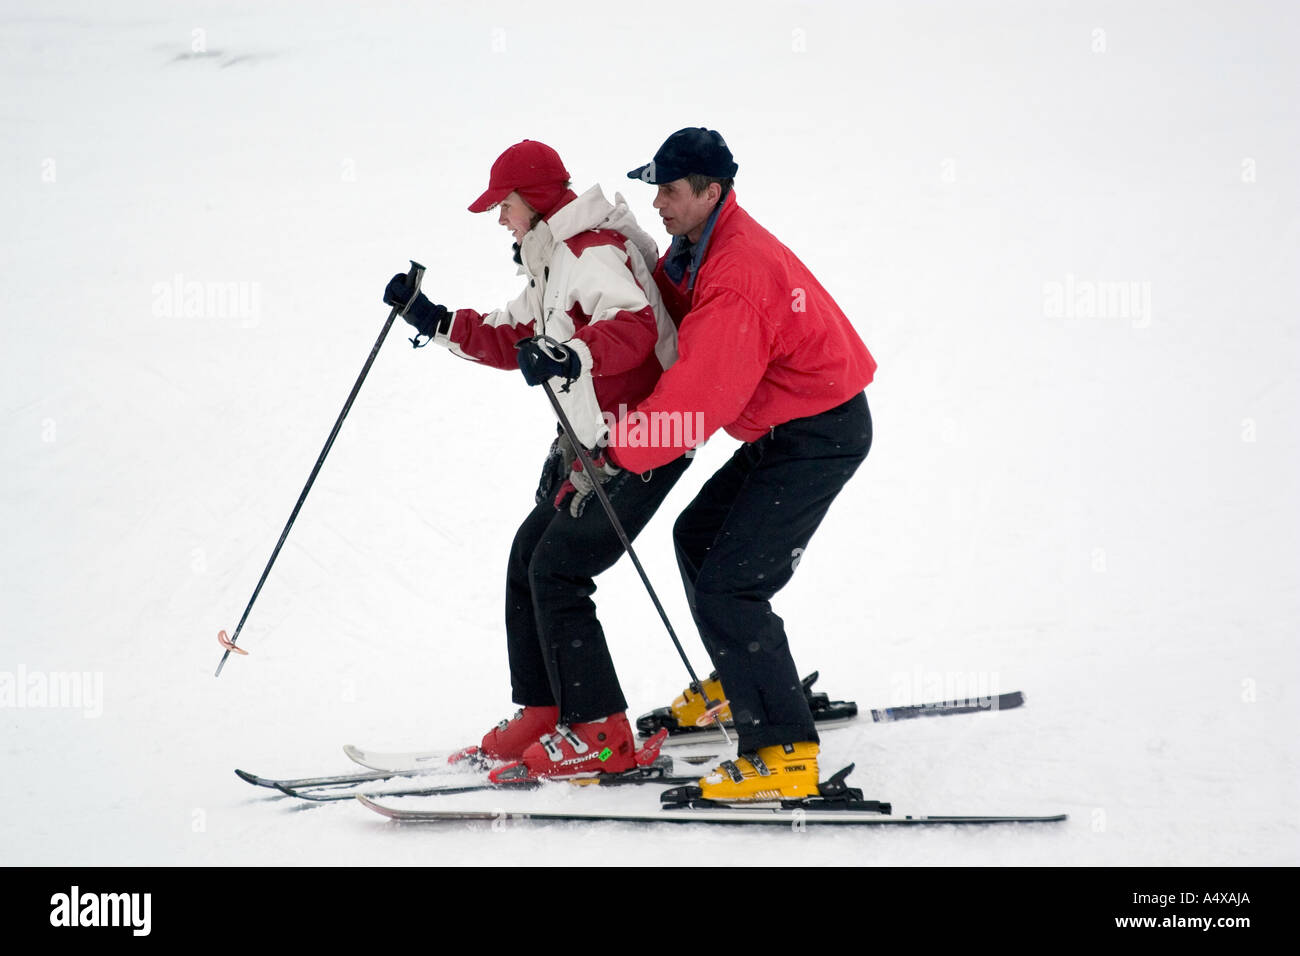 Ski lessons at a mountain railway in Kiev, Ukraine Stock Photo